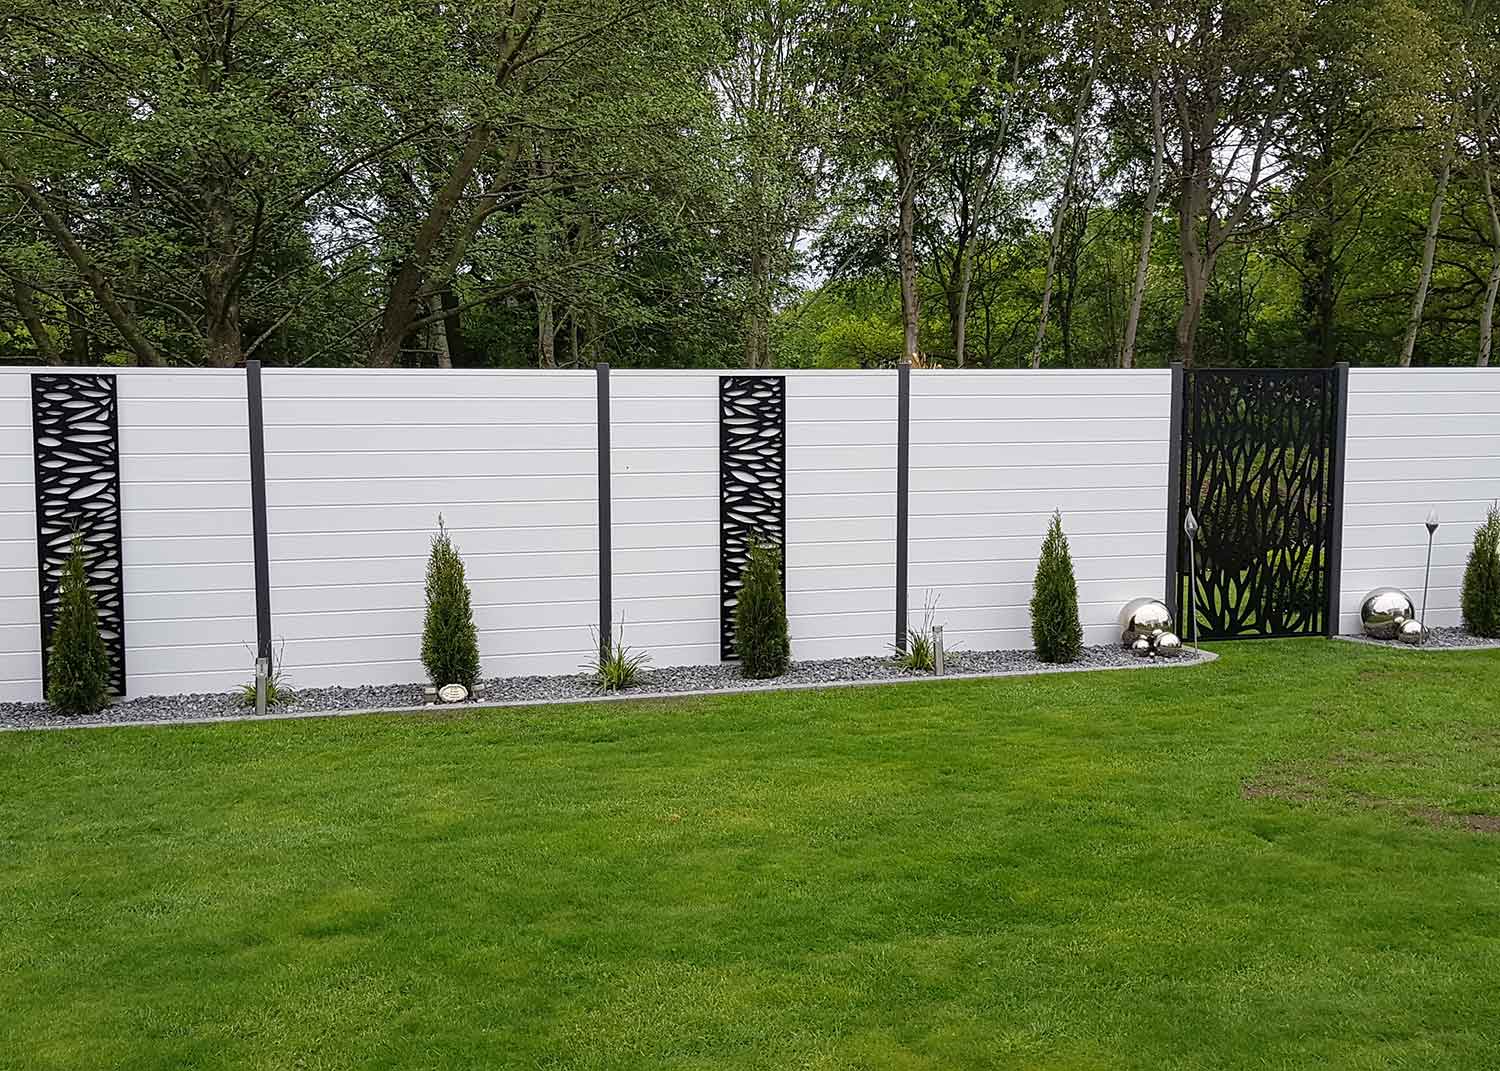 Sichtschutz im Garten aus Kunststoff in Weiß mit verschiedenen Metall-Elementen davor